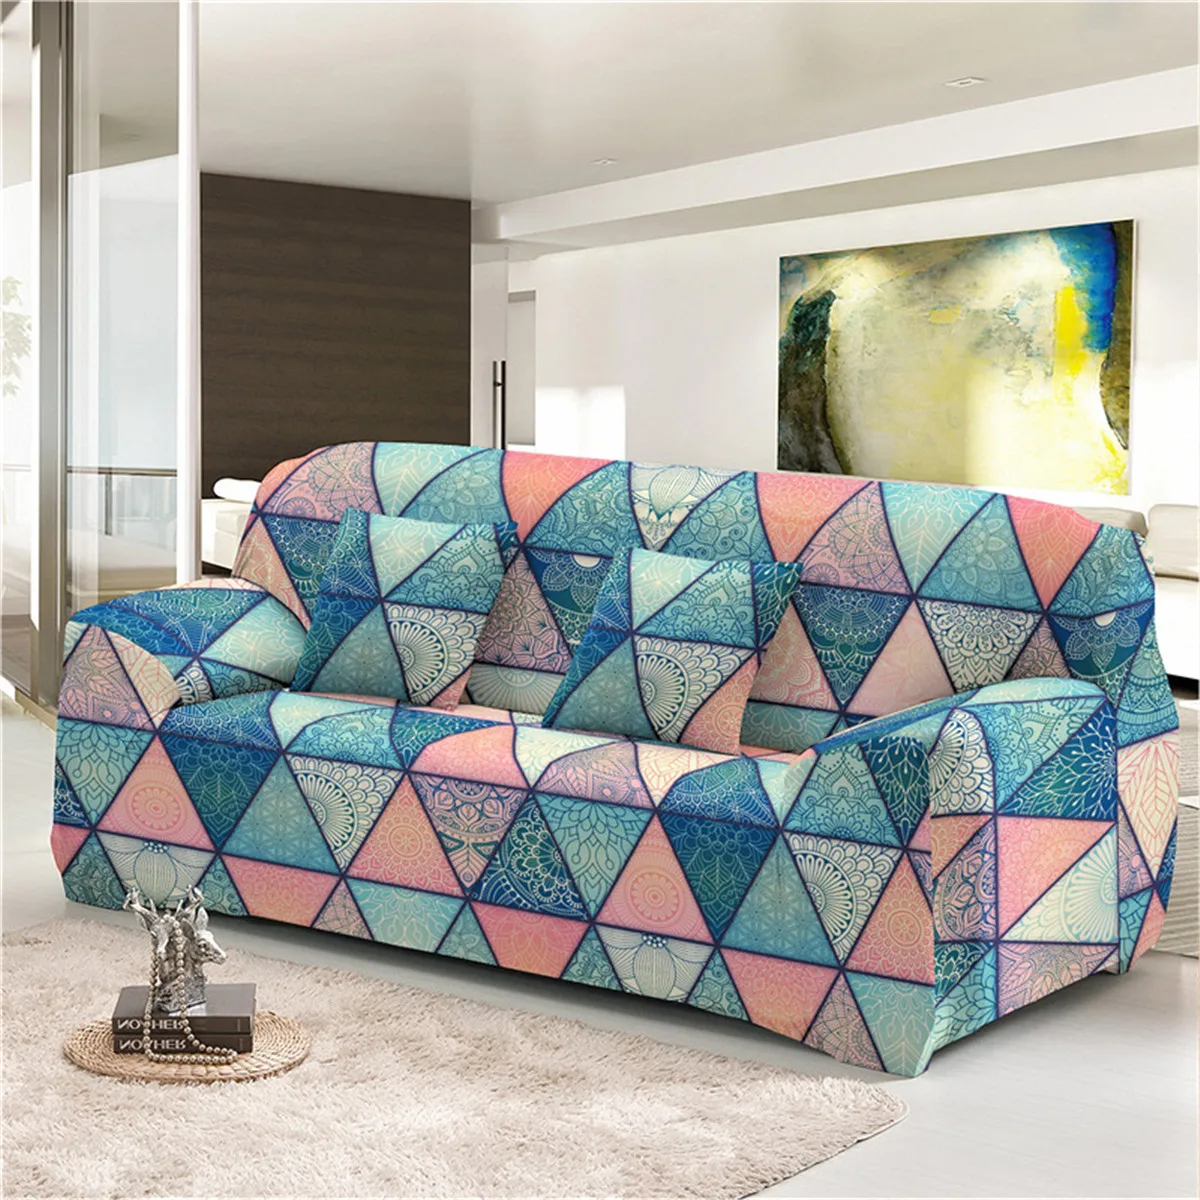 Boniu геометрический покрывала для дивана стрейч протектор мебели из полиэстера в богемском стиле с изображением слона диван крышка M l XL XXL XXXL XXXXL для Гостиная 1/2/3/4 местный